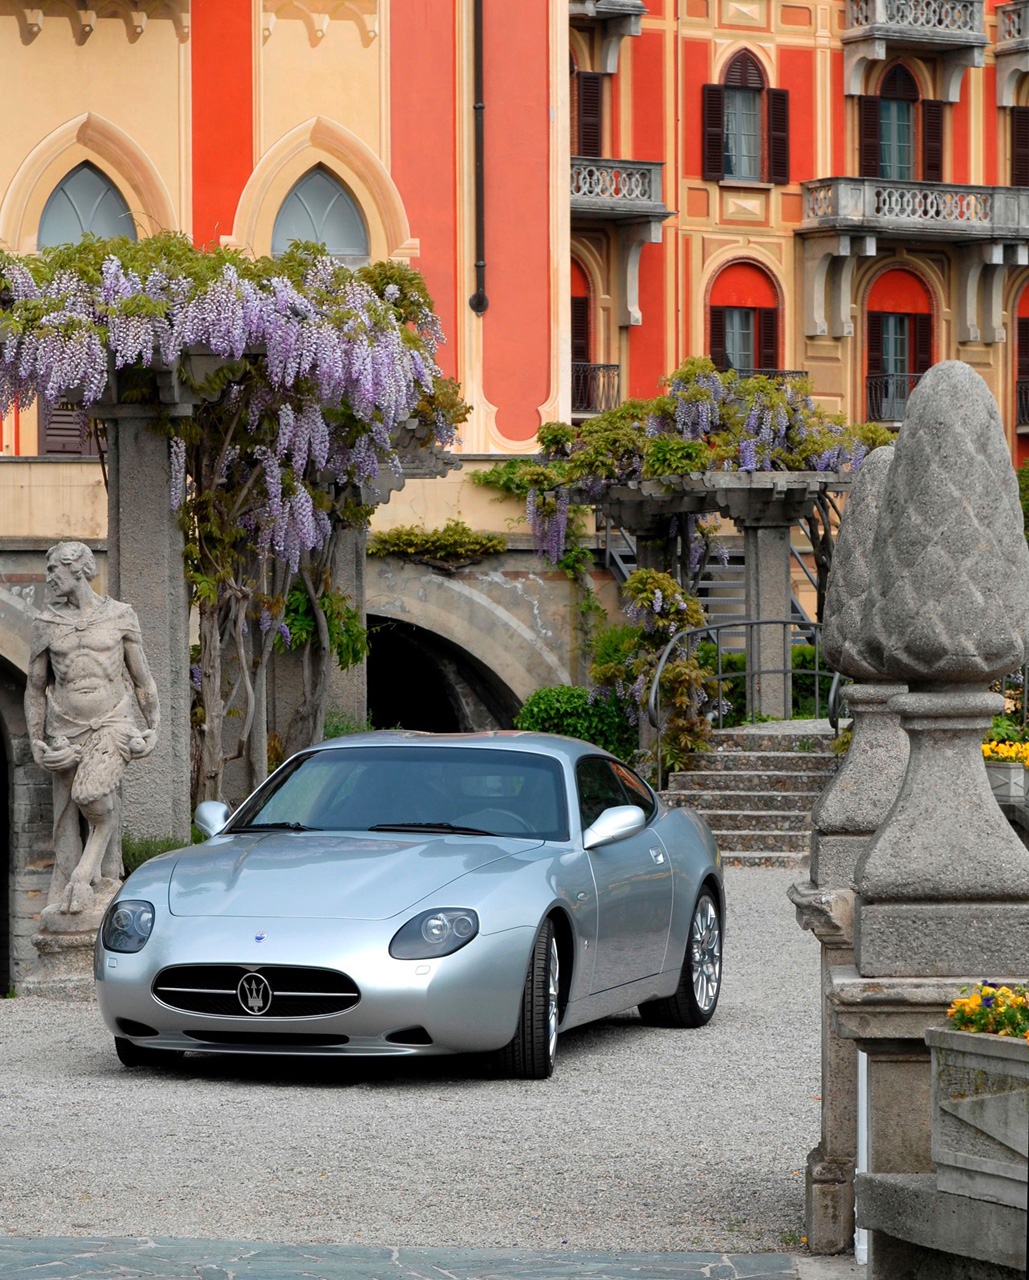 Maserati GS Zagato Coupe